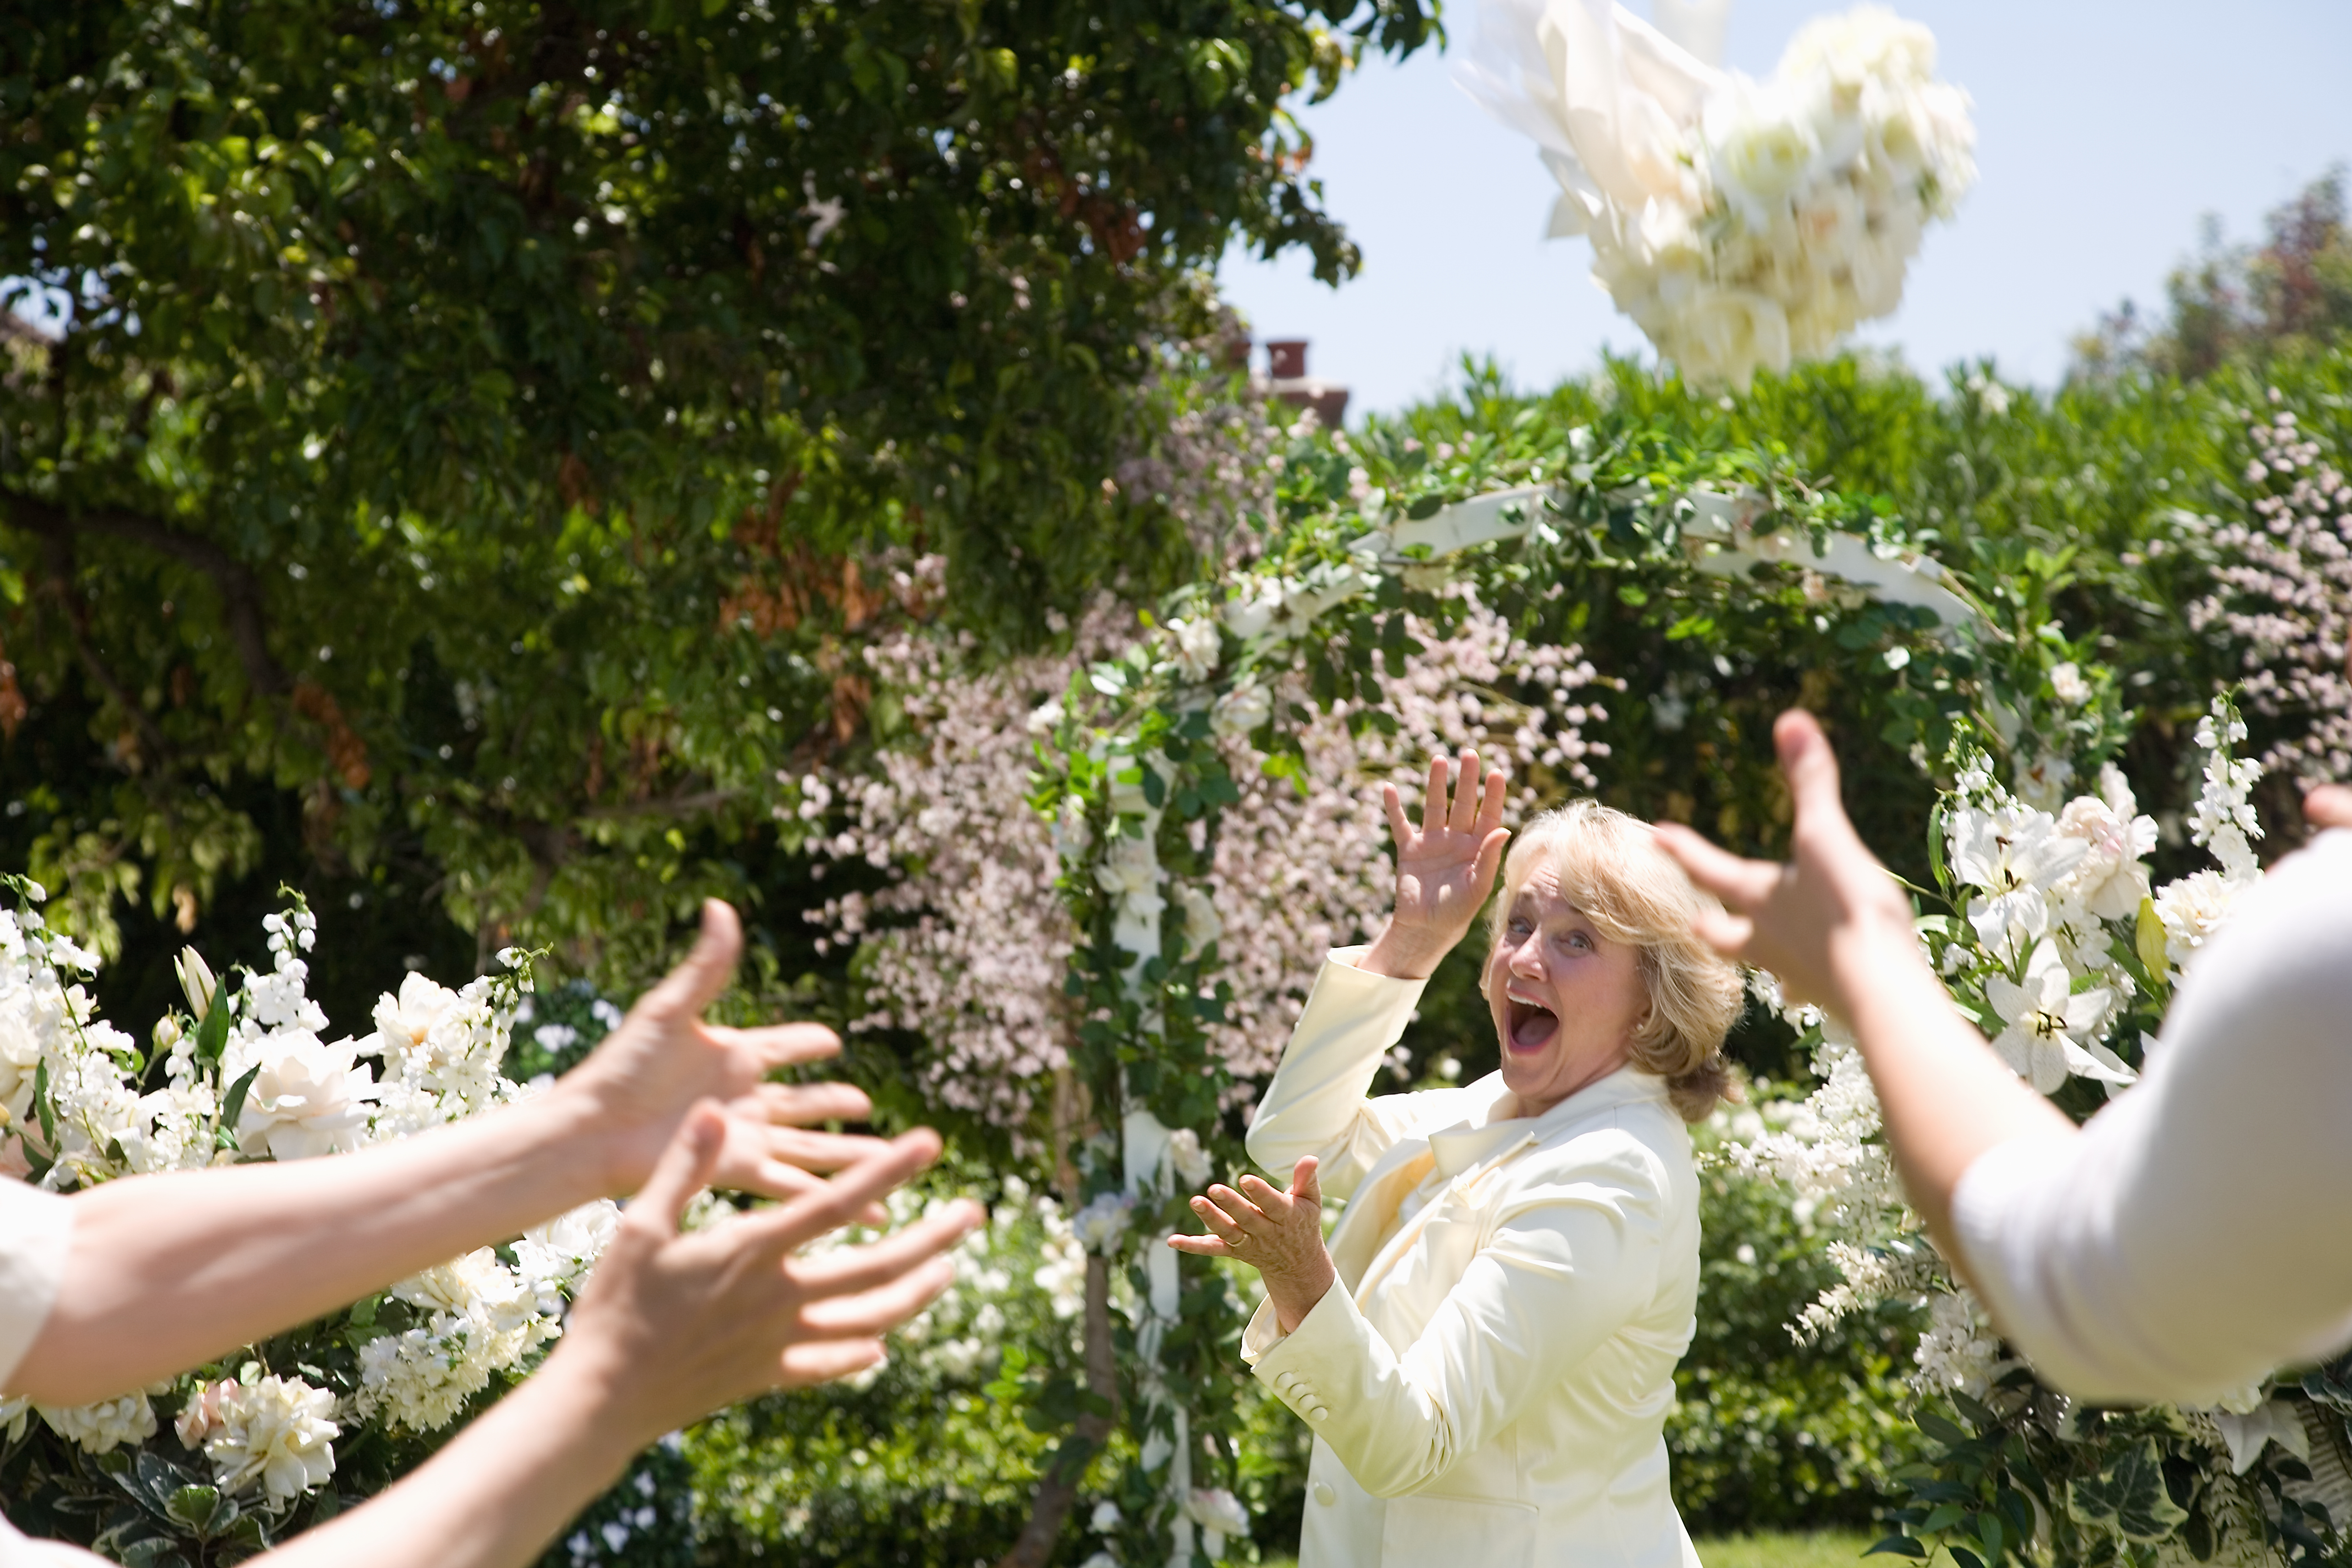 Braut wirft Blumenstrauß, lachend | Quelle: Getty Images